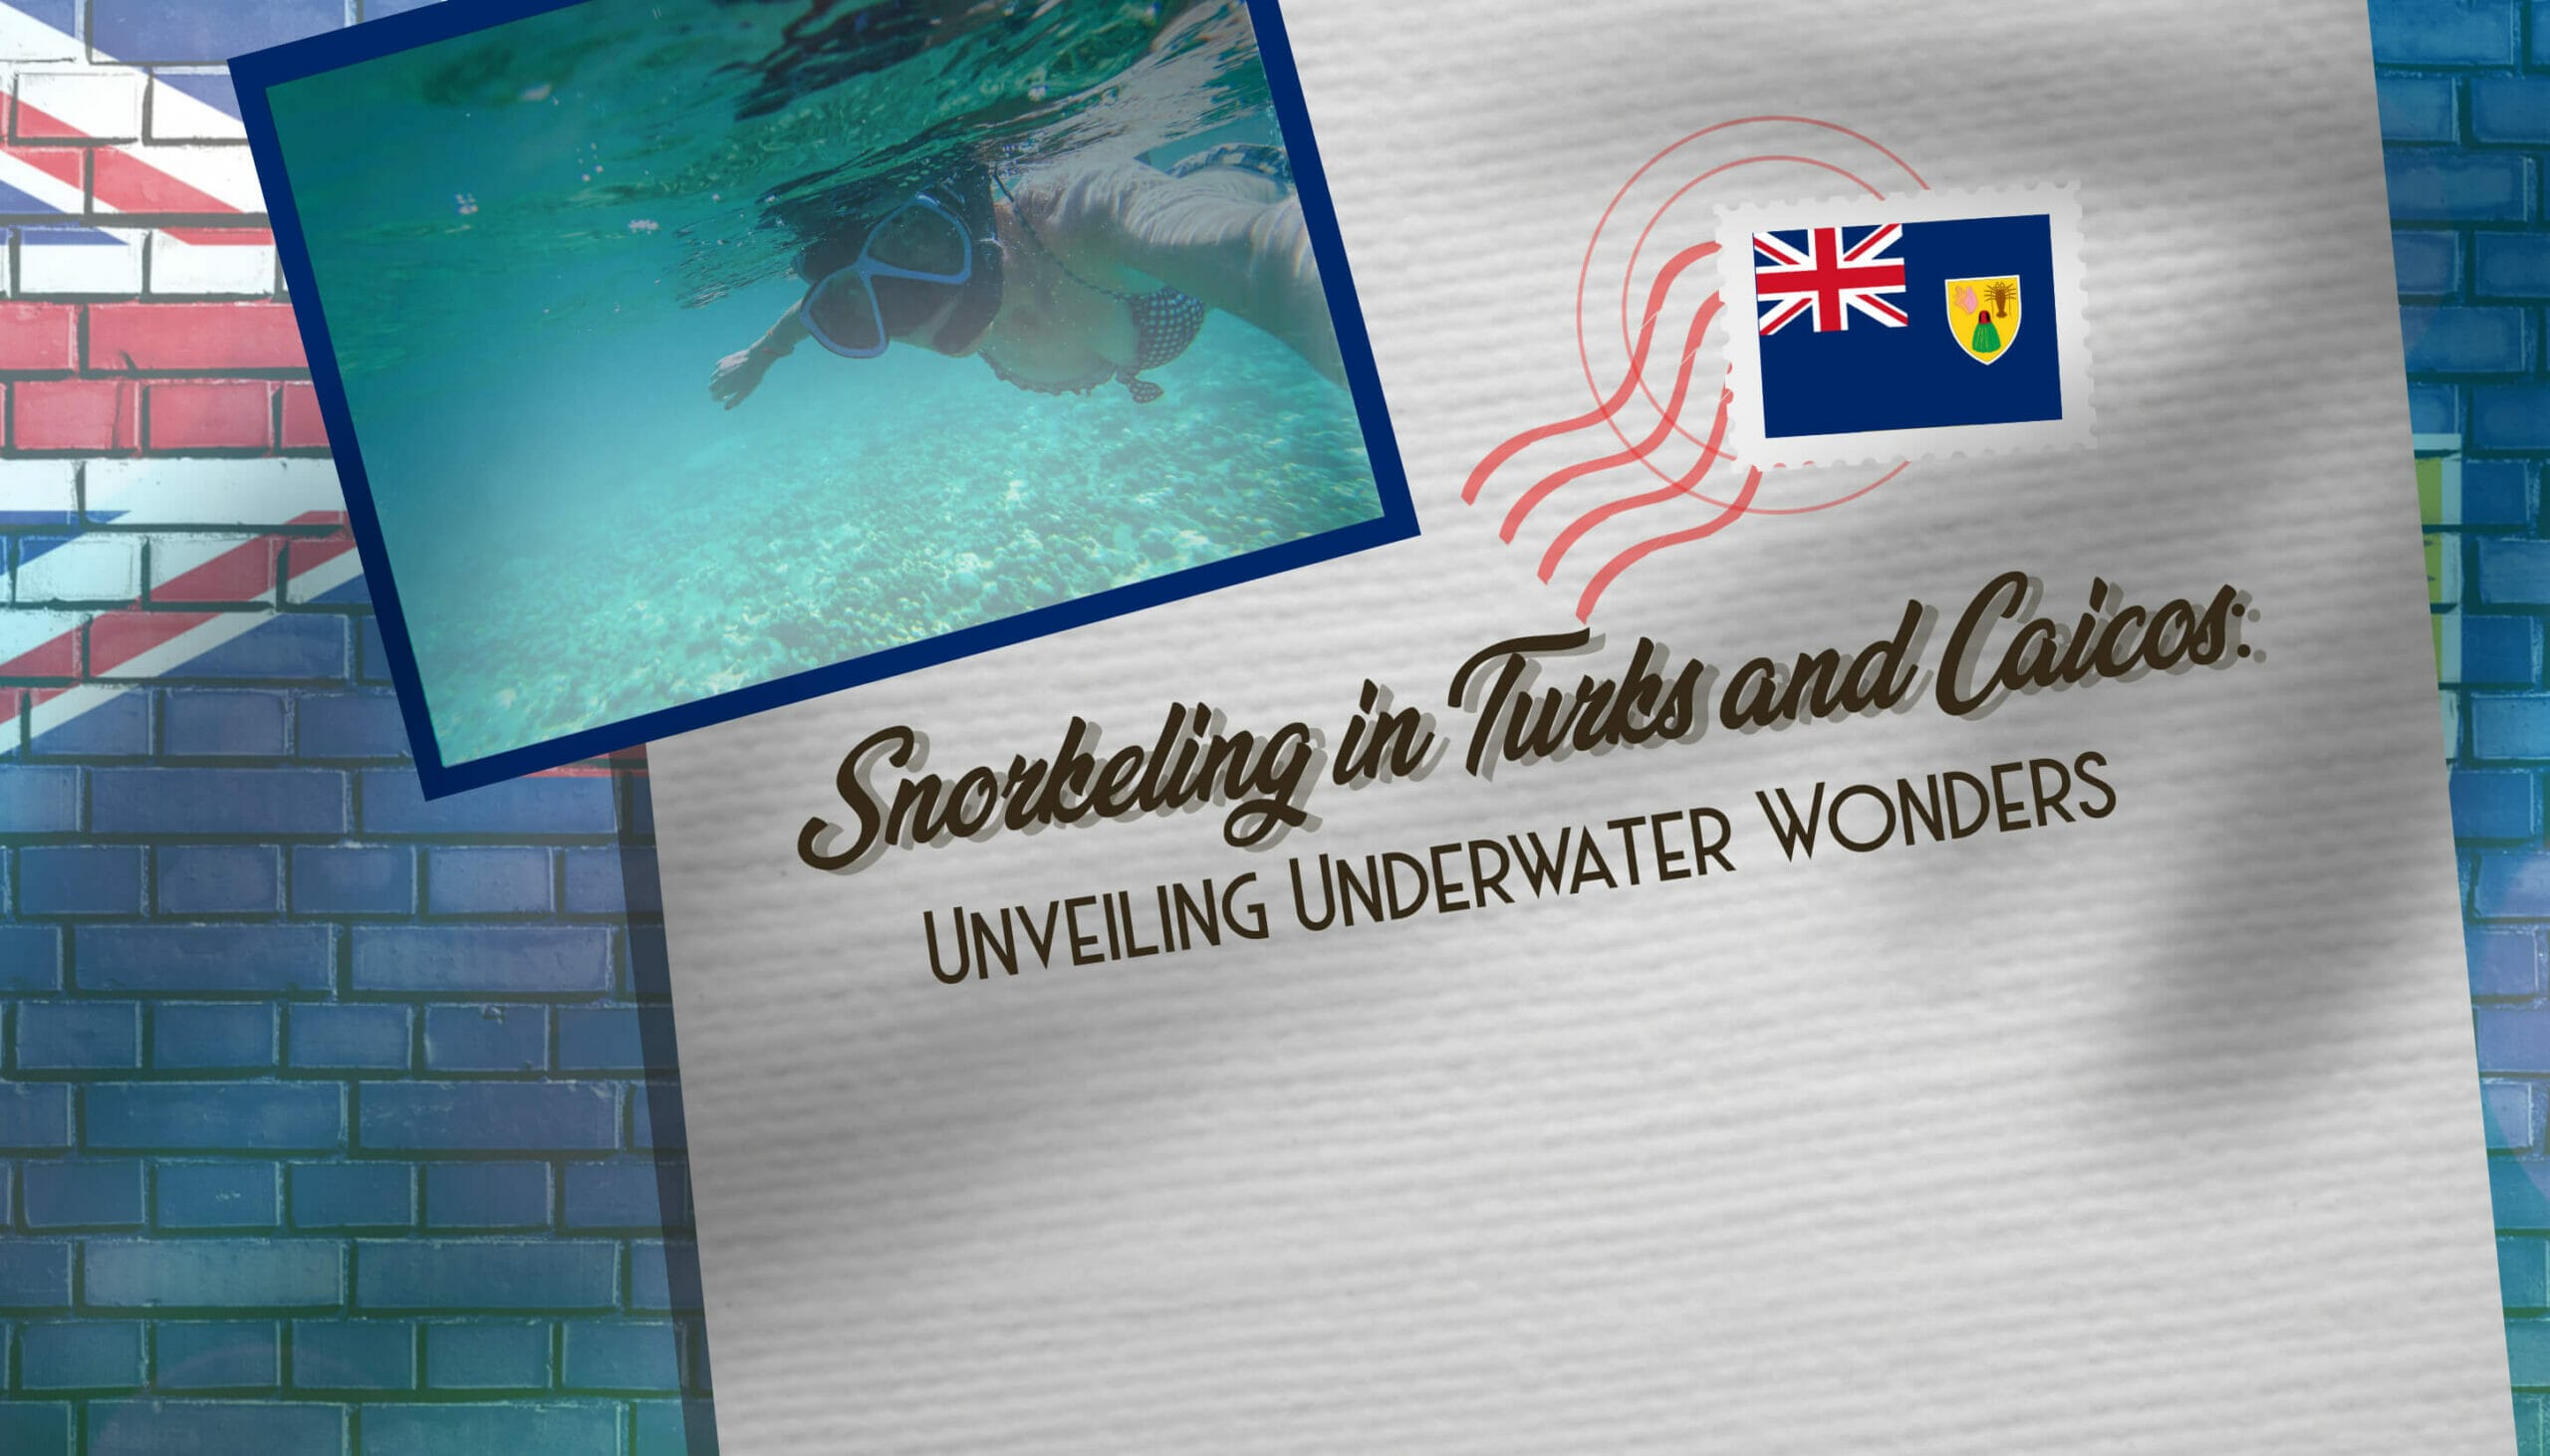 Snorkeling in Turks and Caicos Unveiling Underwater Wonders